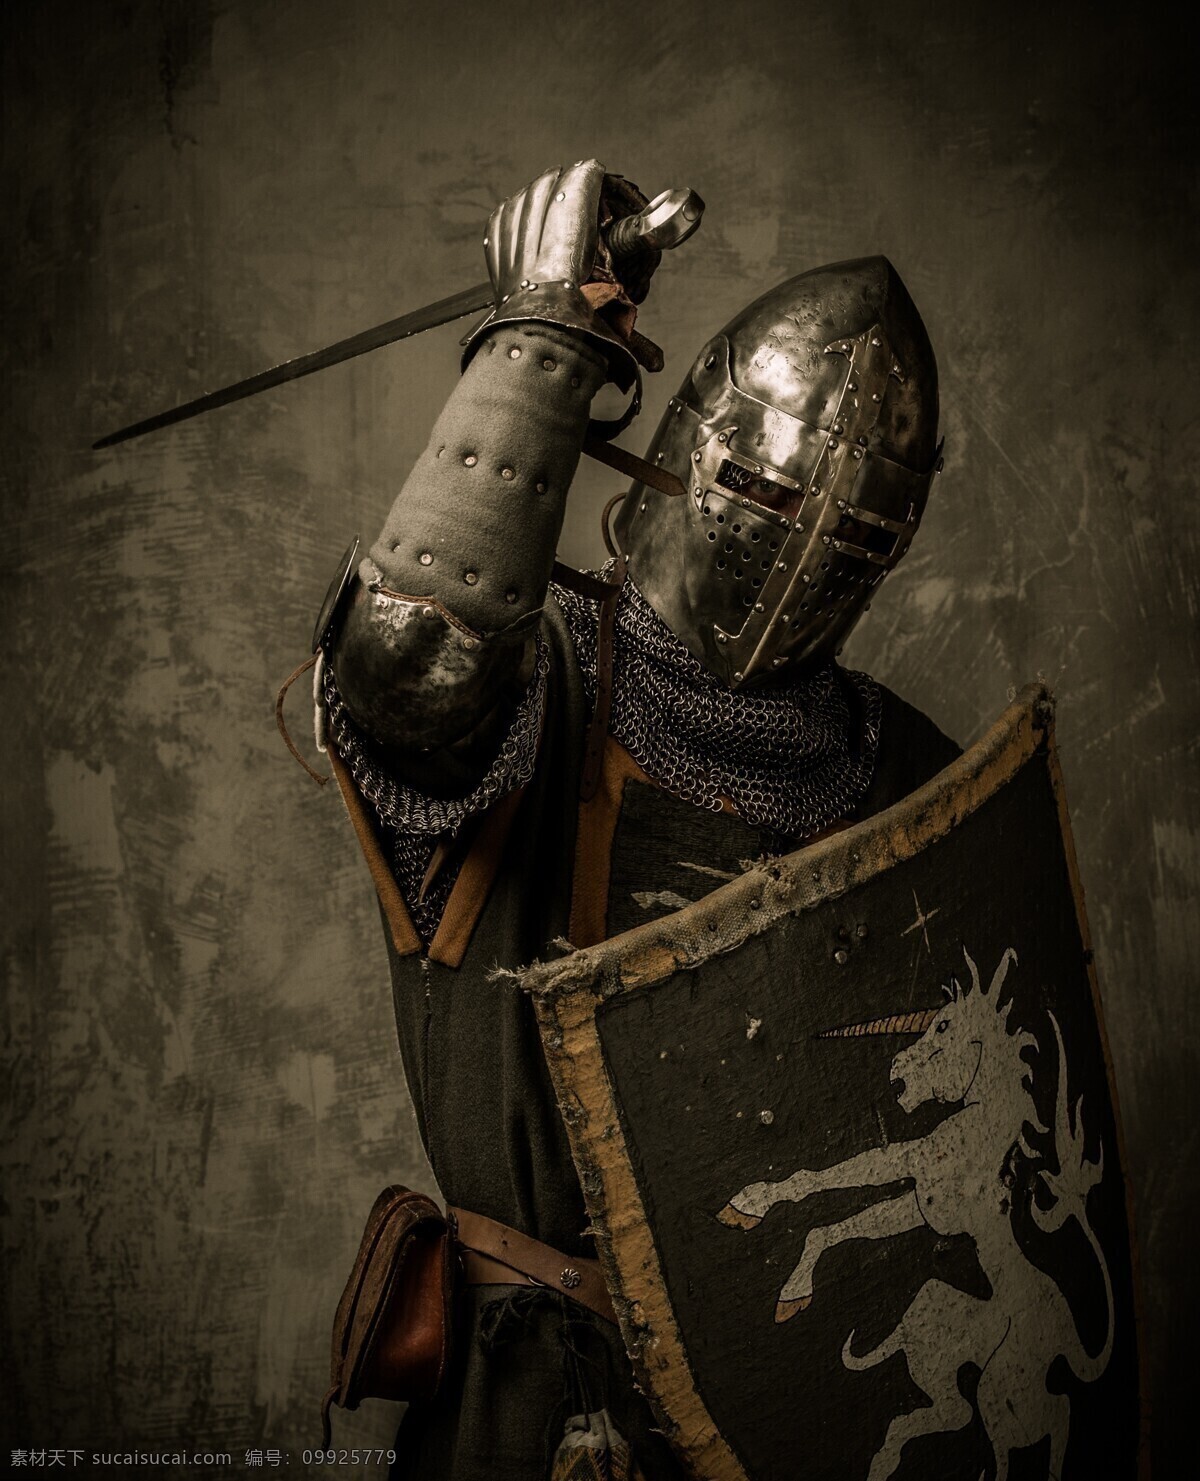 骑士 盔甲 古代骑士 皇家骑士 皇家战士 武士 战士 士兵 欧洲骑士 骑士团 外国骑士 古代战士 外国战士 中世纪骑士 文化艺术 传统文化